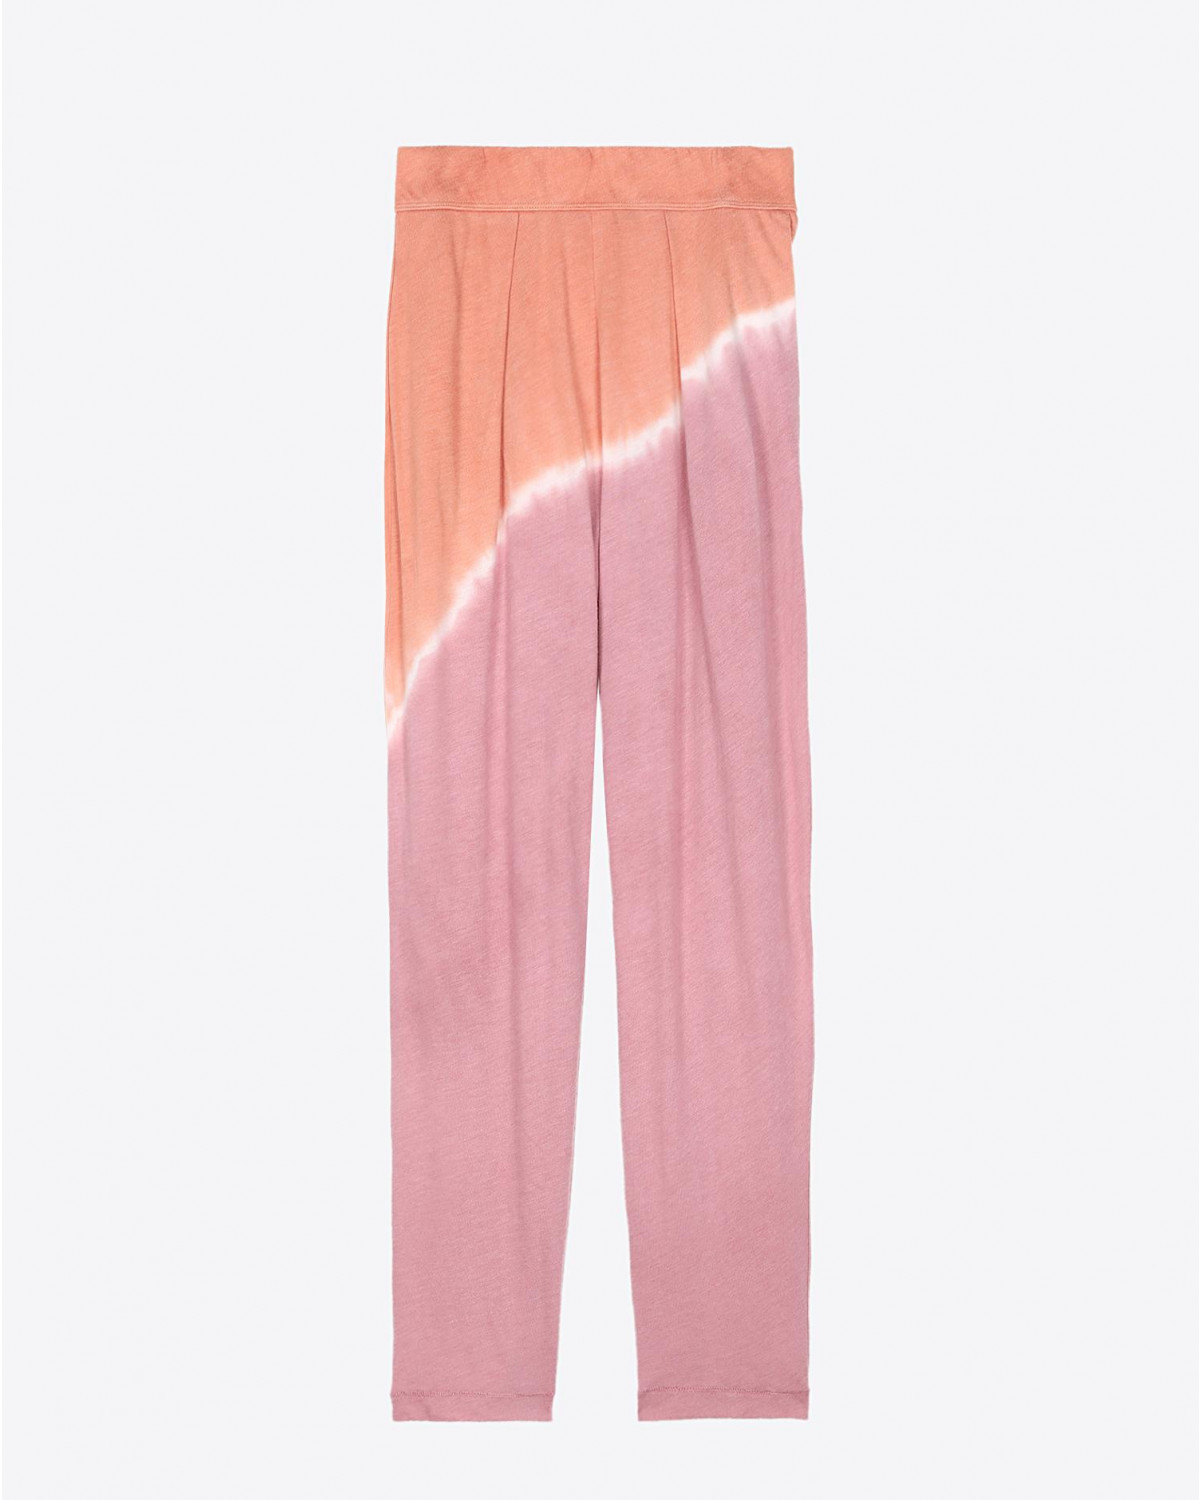 Pantalon Raquel Allegra Pré-Collection Easy Pant - Pink Sunrise
